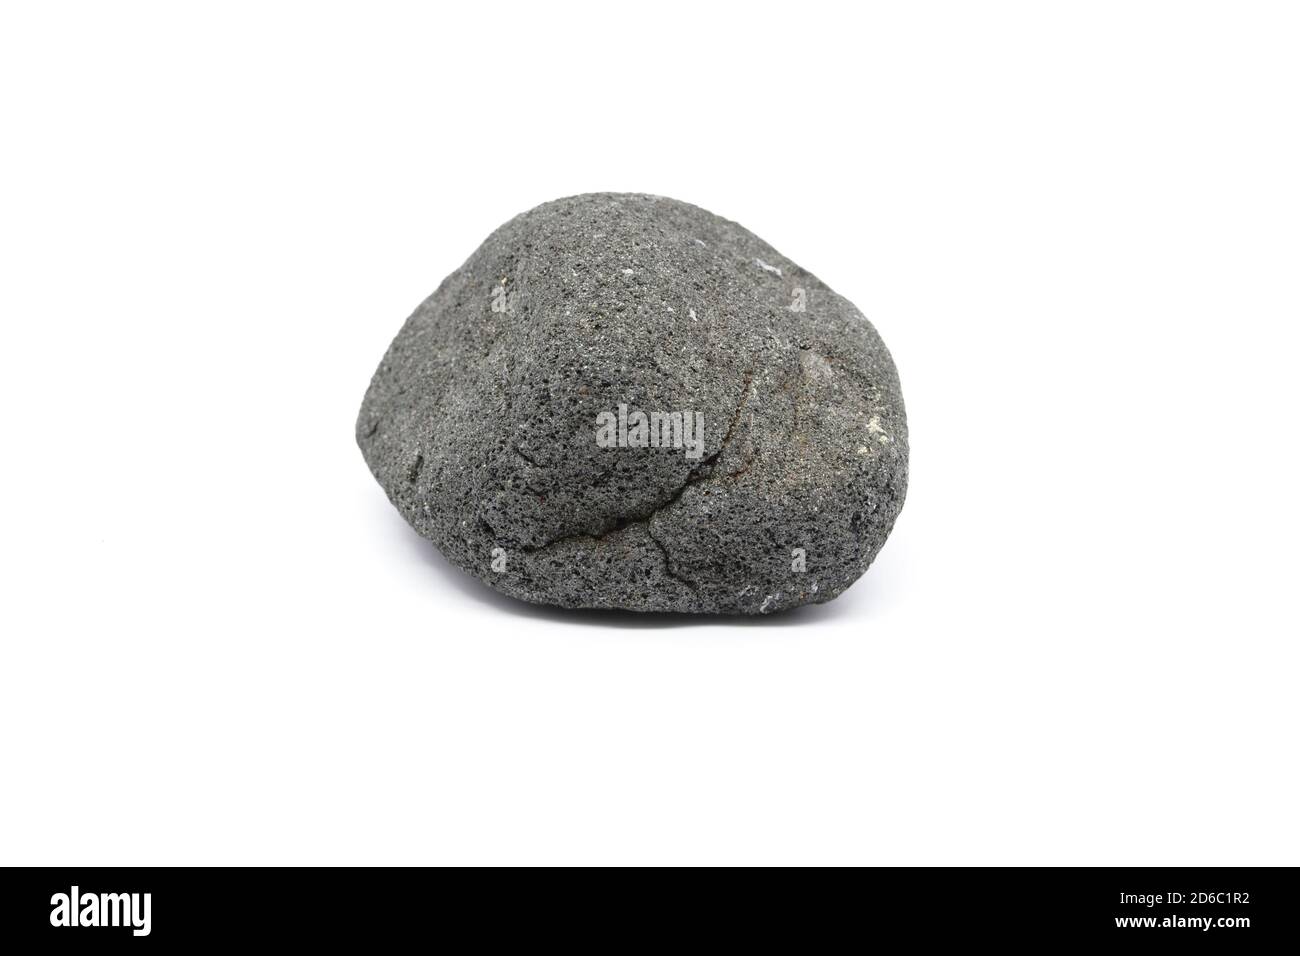 Lava stone stone.Lava stone pebble isolated on white background.Igneous rock. Stock Photo